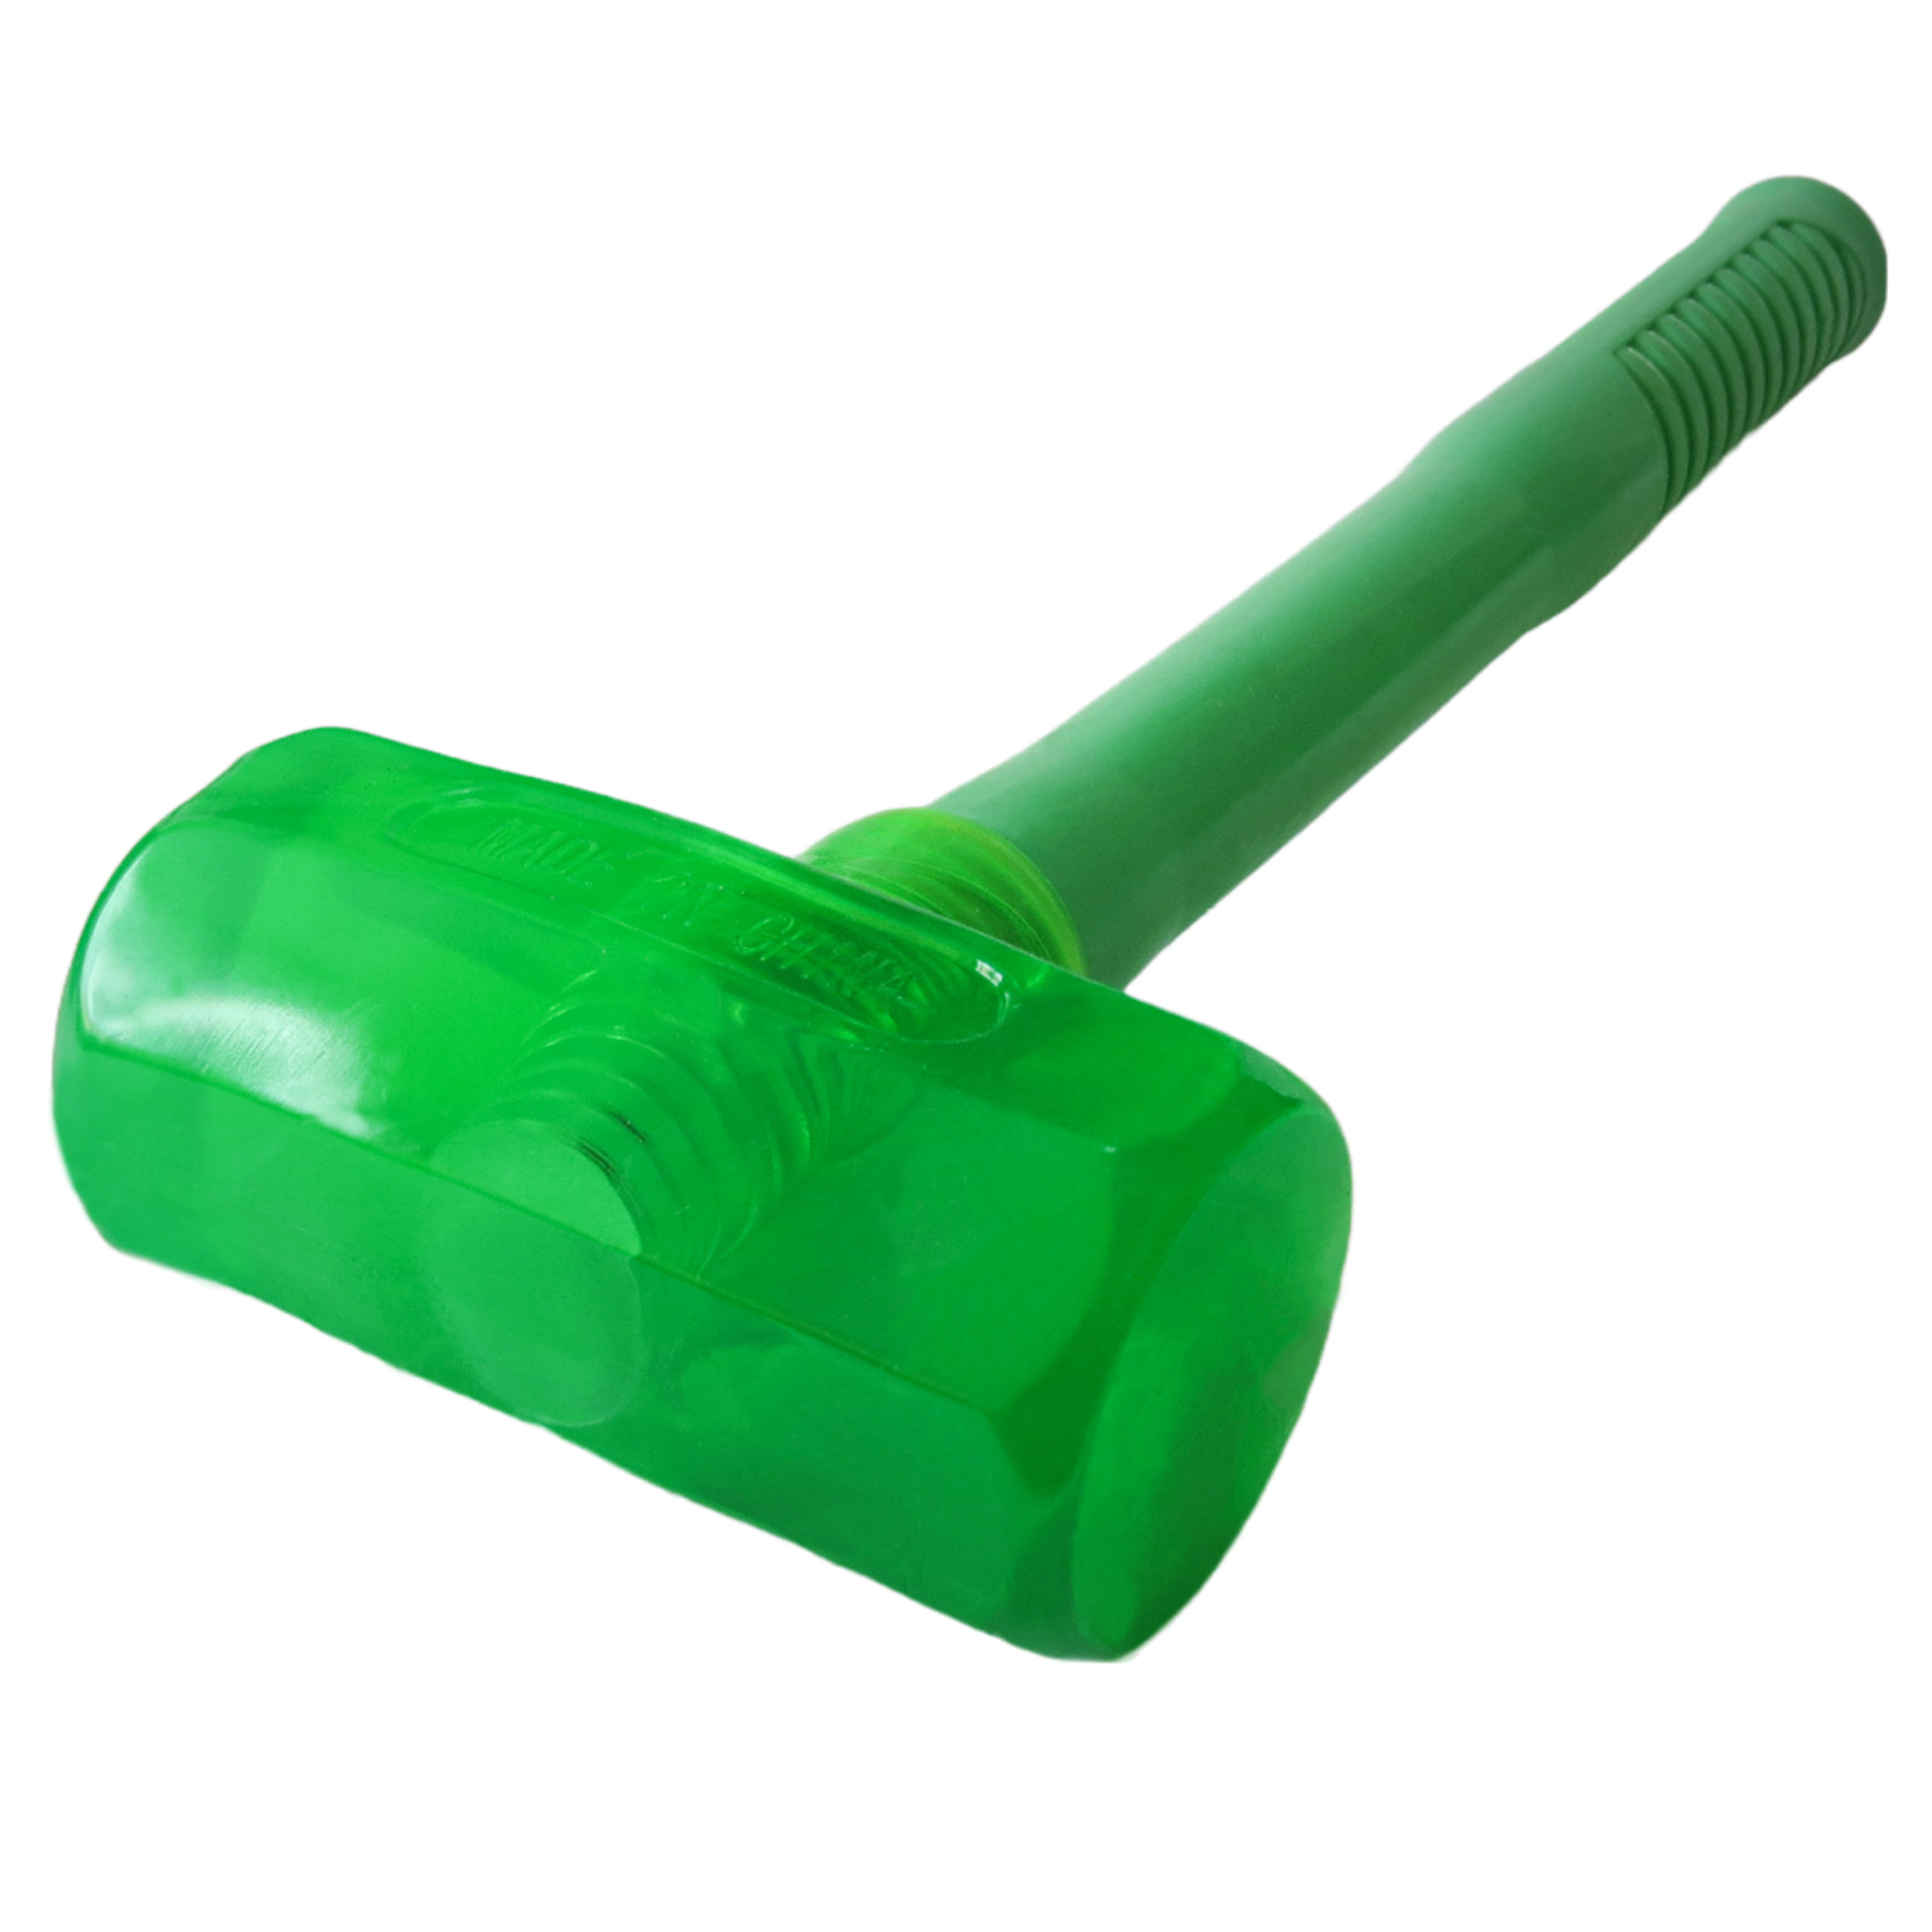 Киянка силиконовая зеленая 500гр.VK-2105 (1*70)(1*50)